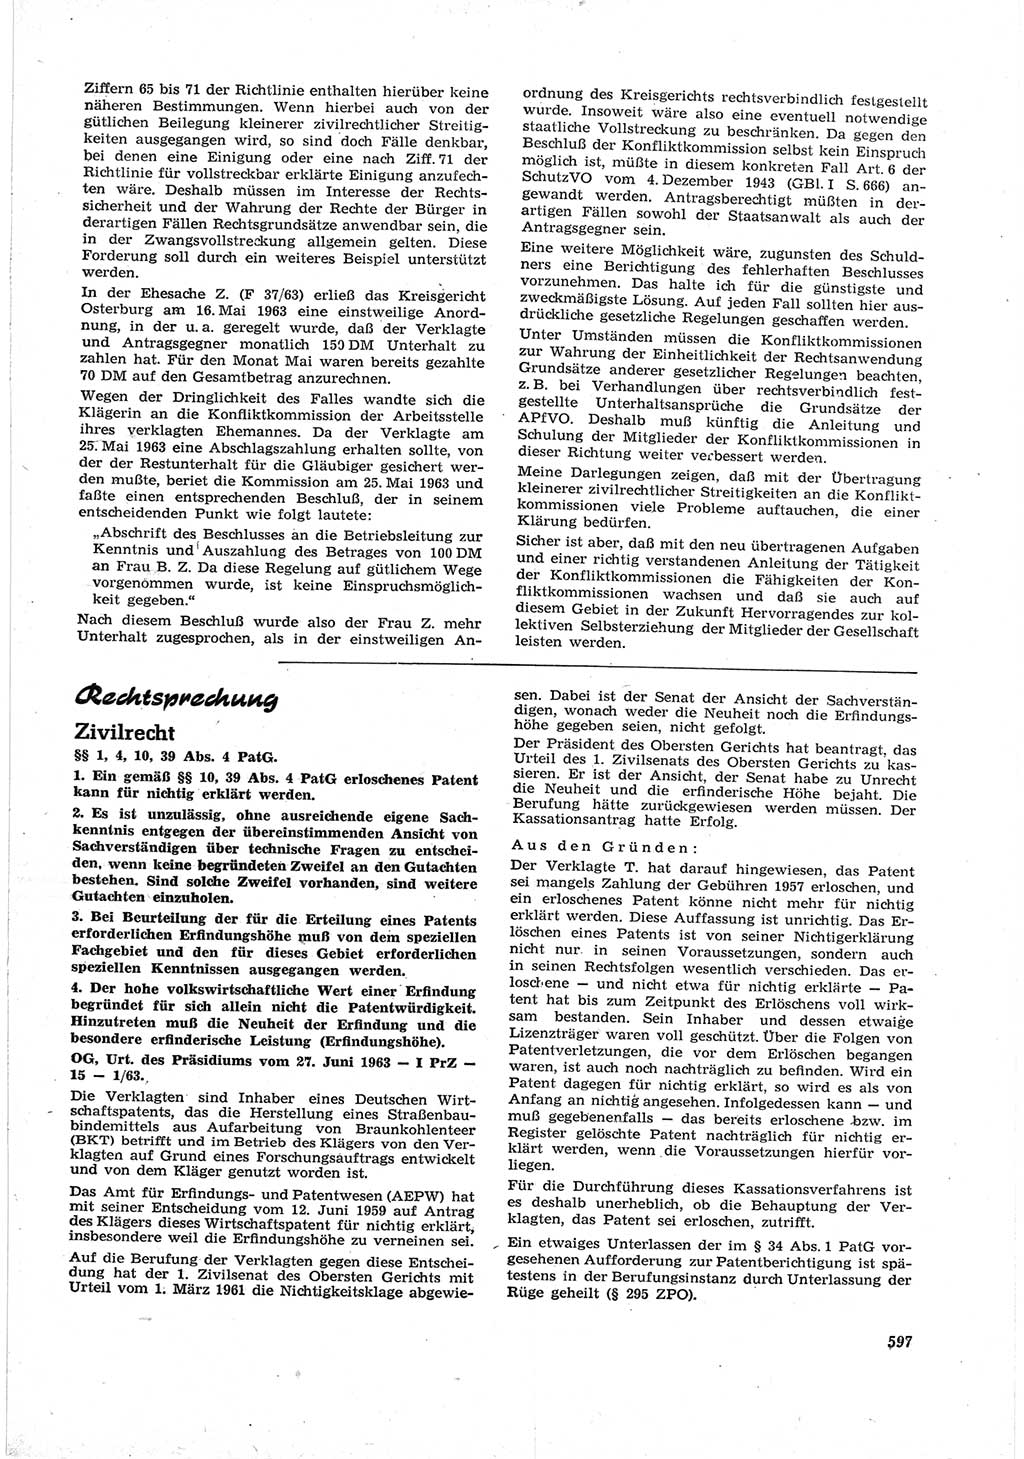 Neue Justiz (NJ), Zeitschrift für Recht und Rechtswissenschaft [Deutsche Demokratische Republik (DDR)], 17. Jahrgang 1963, Seite 597 (NJ DDR 1963, S. 597)